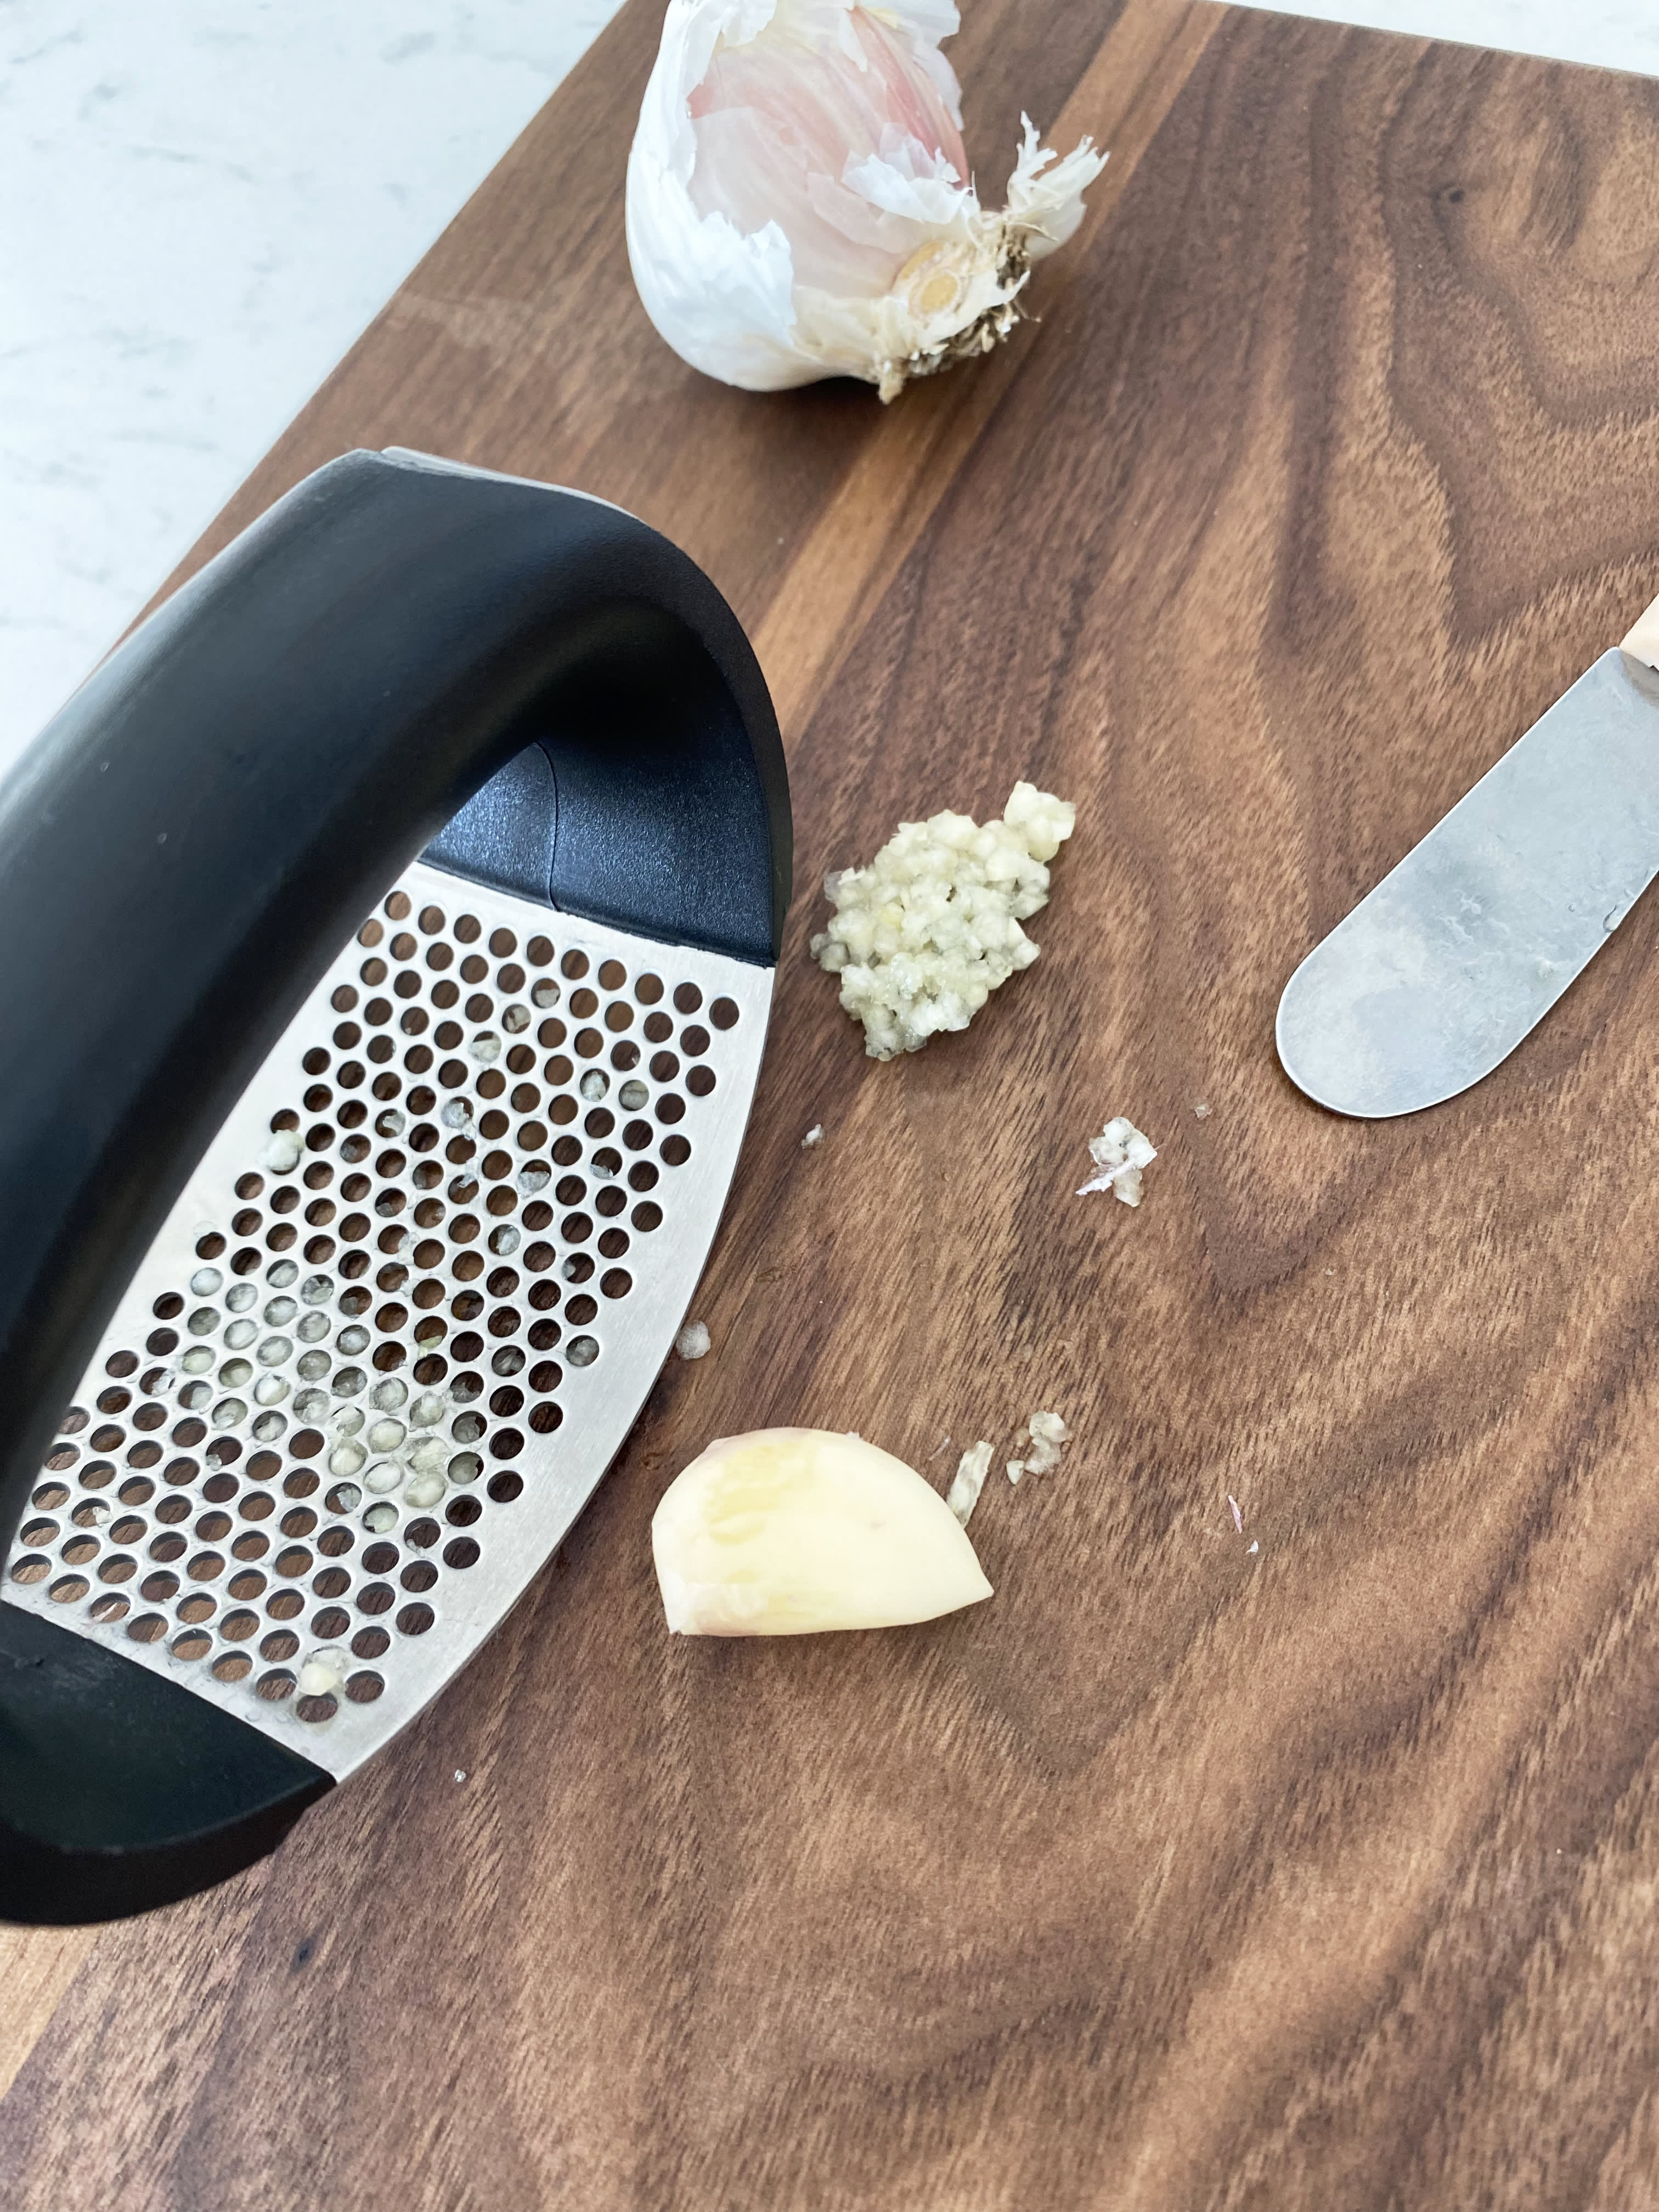 Garlic Press Rocker – My Kitchen Gadgets